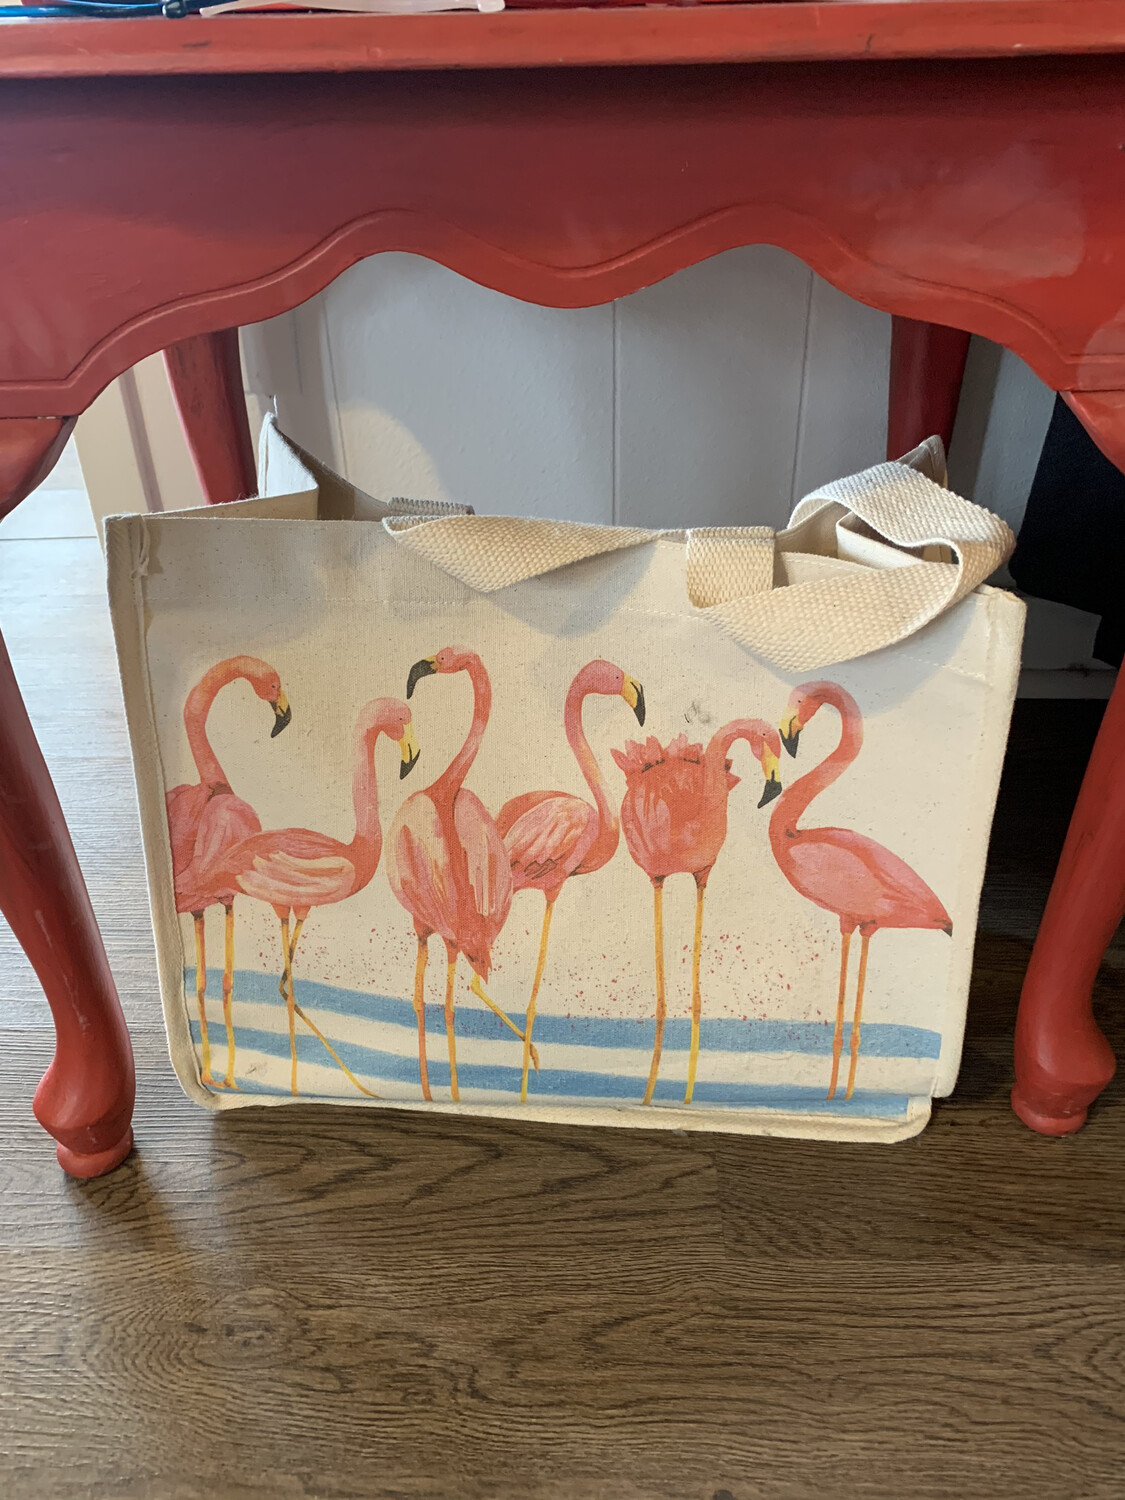 Flamingo Bag